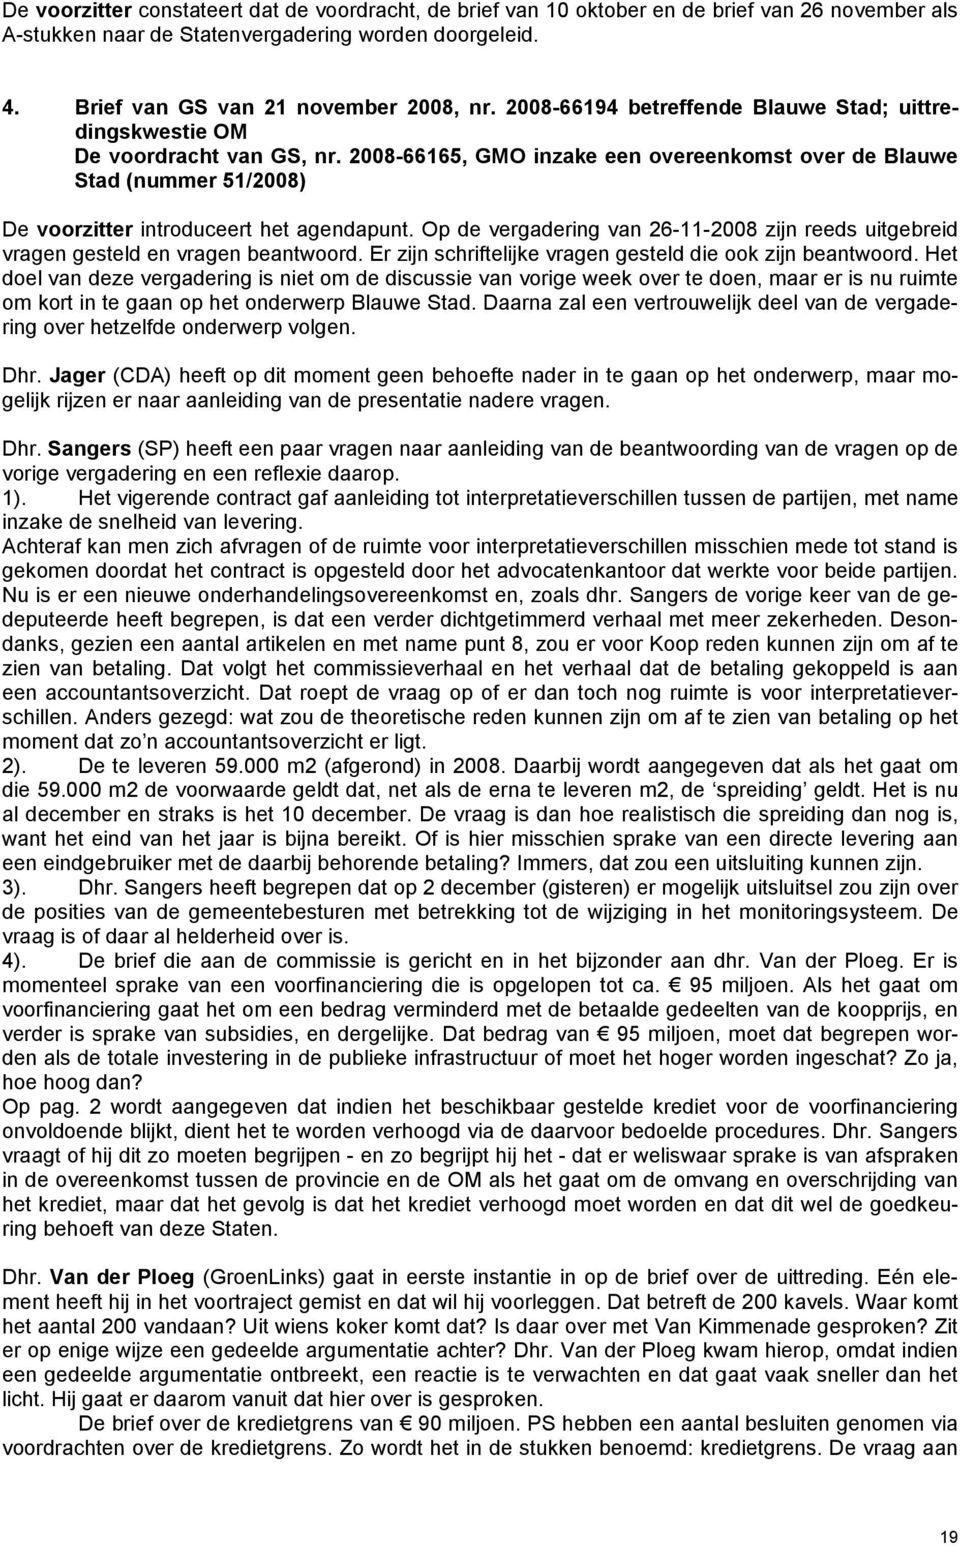 2008-66165, GMO inzake een overeenkomst over de Blauwe Stad (nummer 51/2008) De voorzitter introduceert het agendapunt.